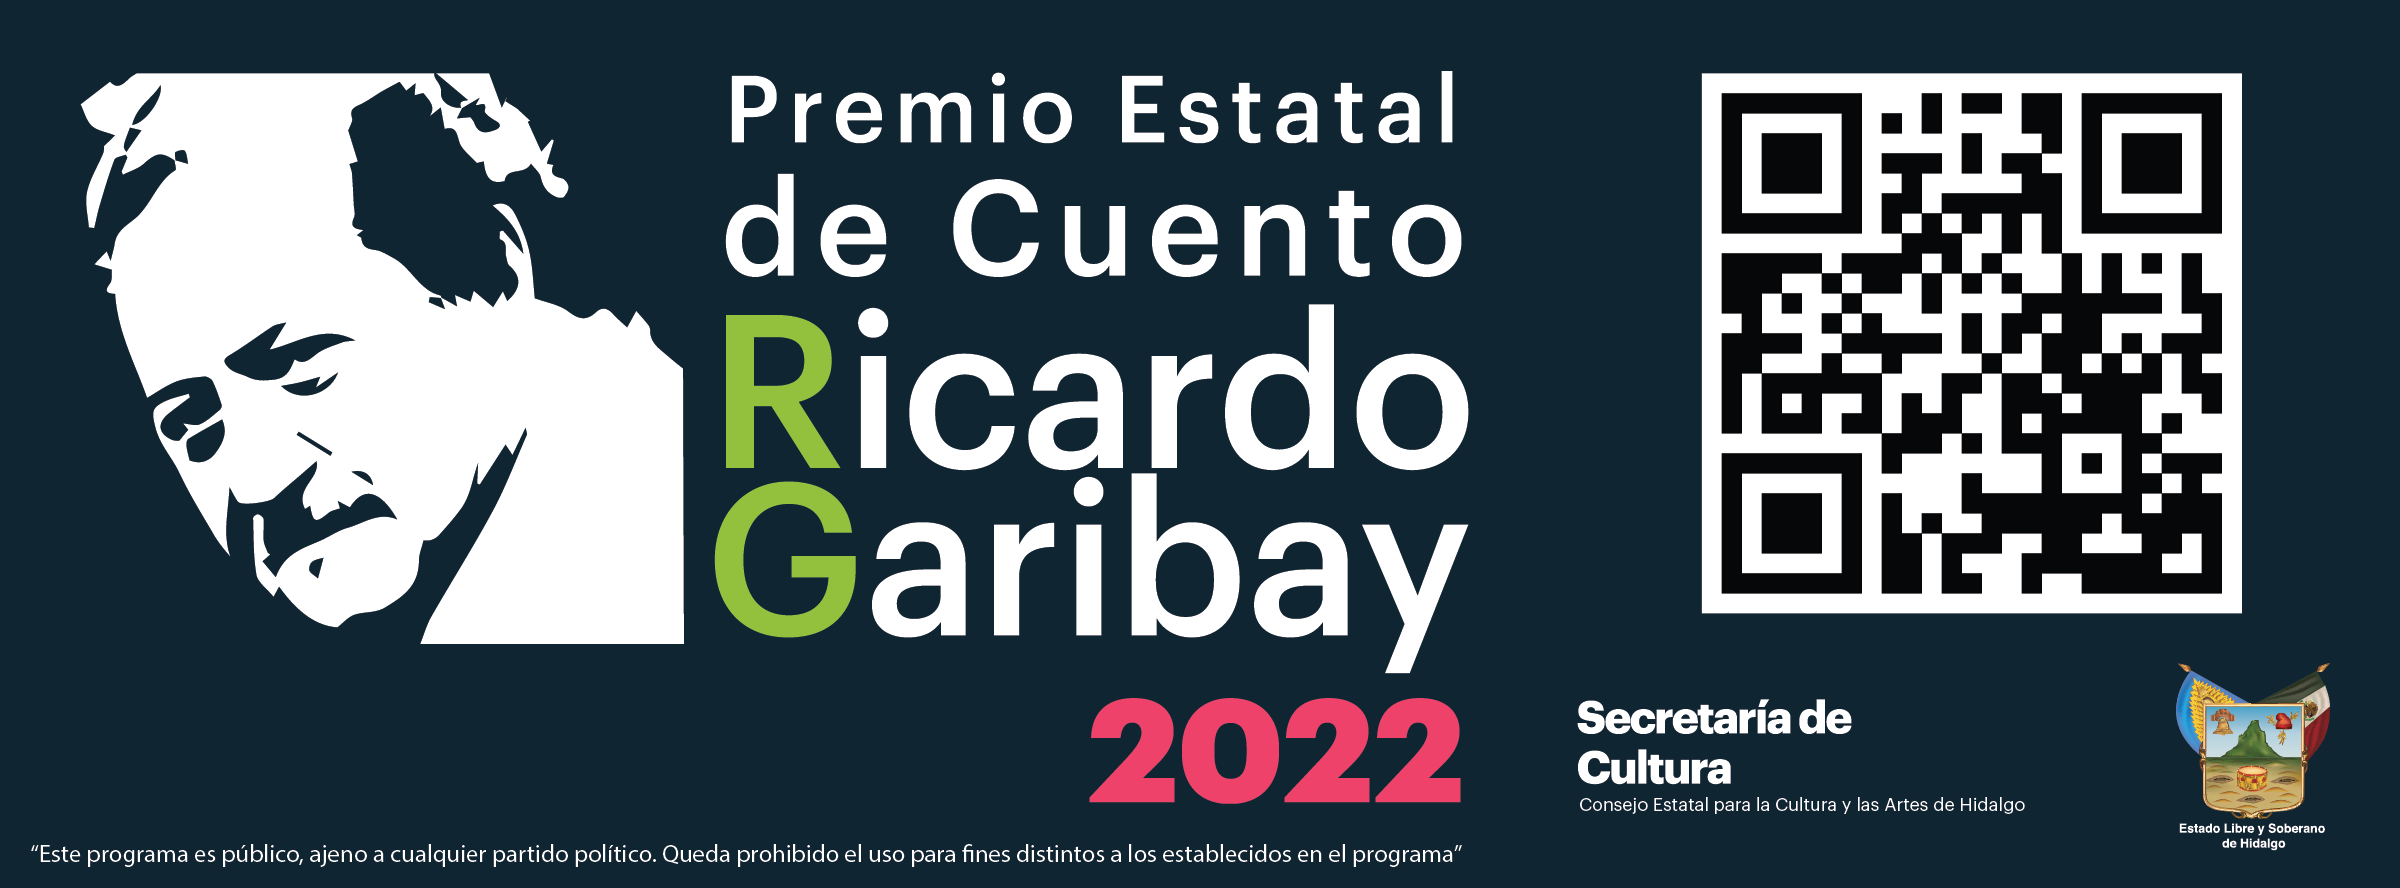 Premio Estatal de Cuento Ricardo Garibay 2022